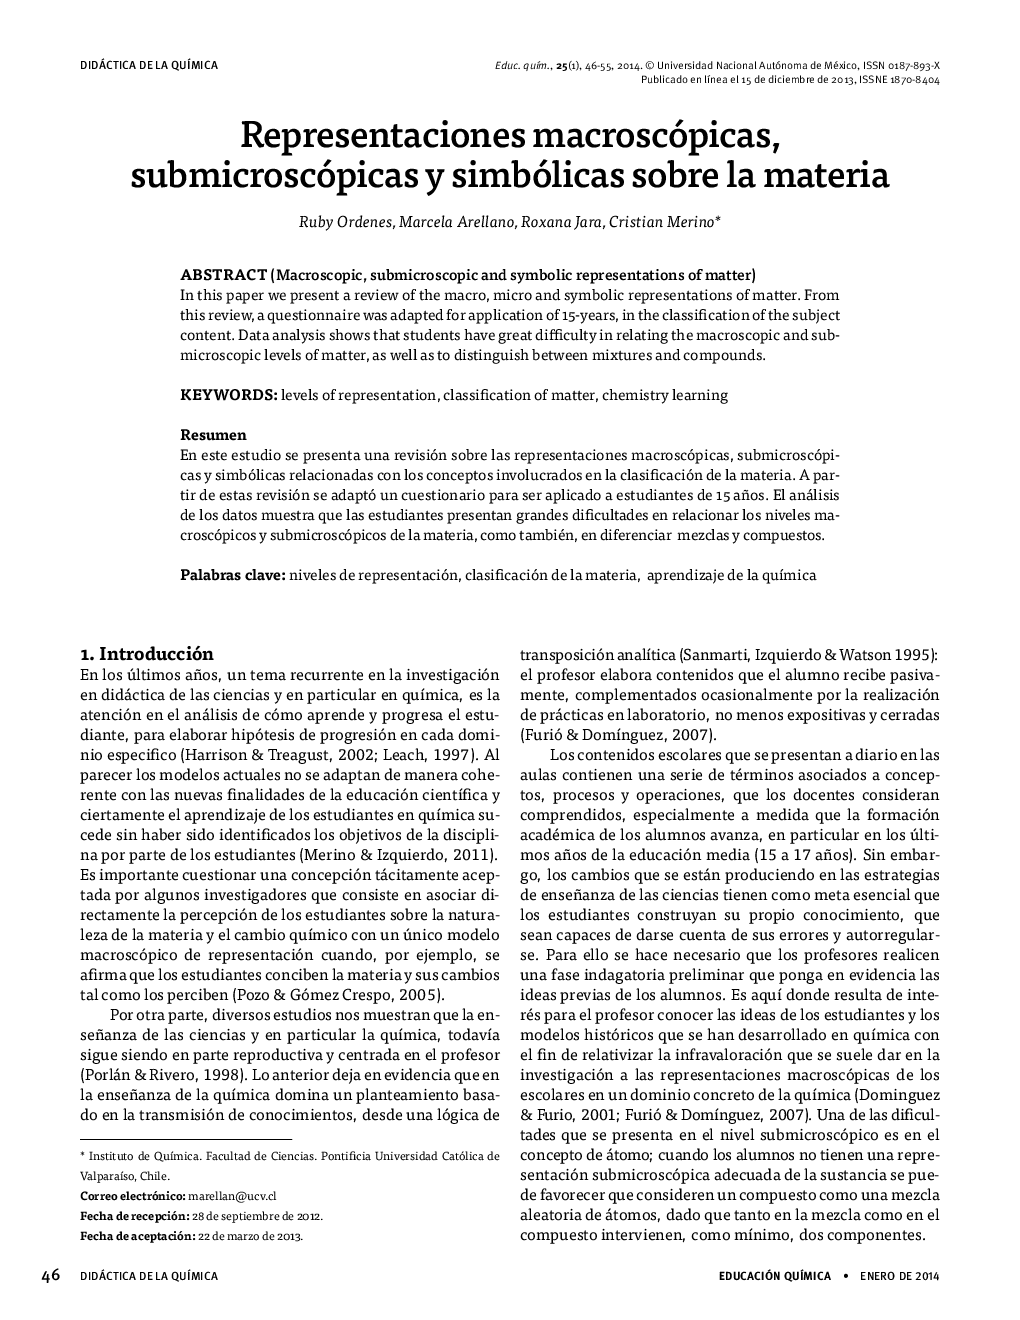 Representaciones macroscópicas, submicroscópicas y simbólicas sobre la materia